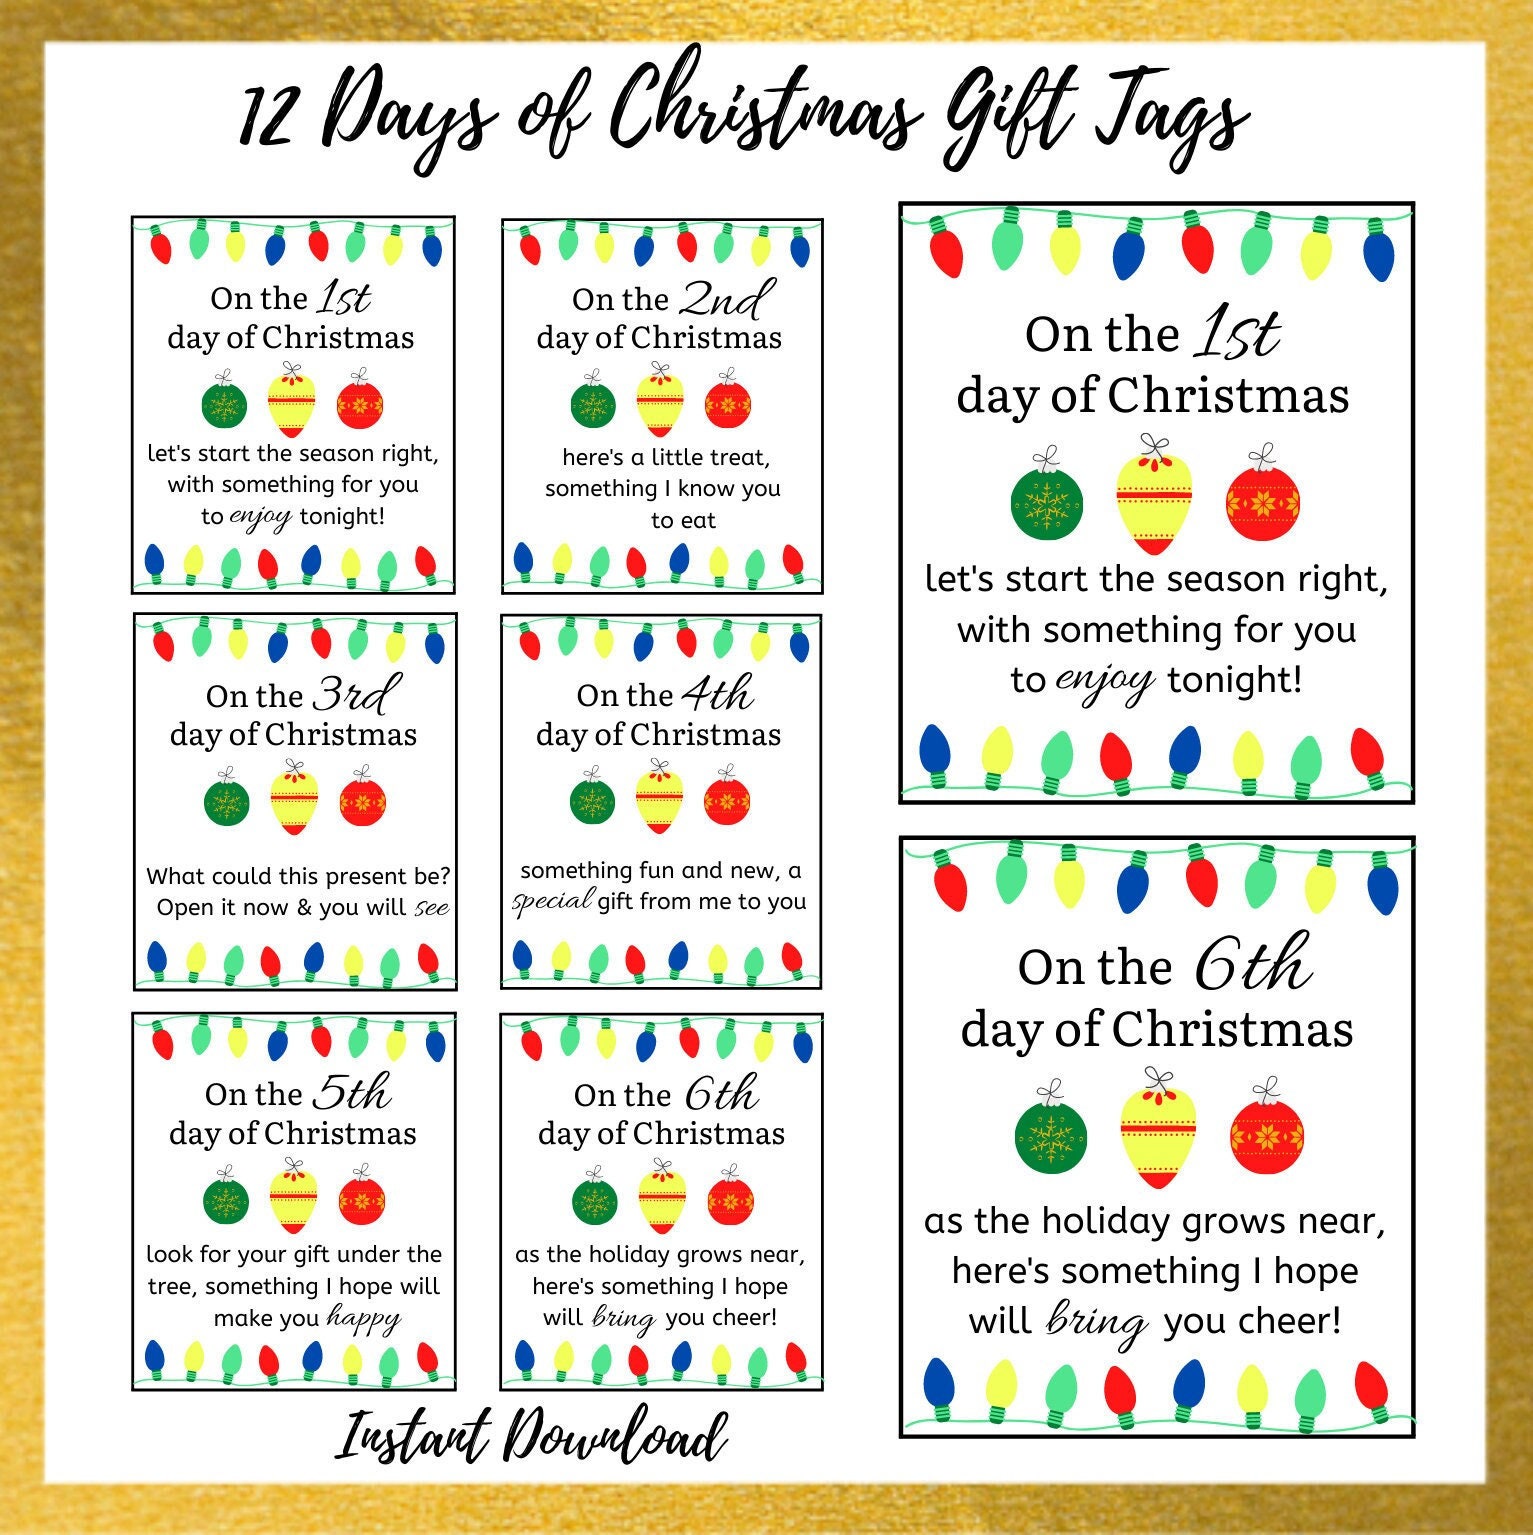 Editable Twelve Days of Christmas Printable Tags, Printable